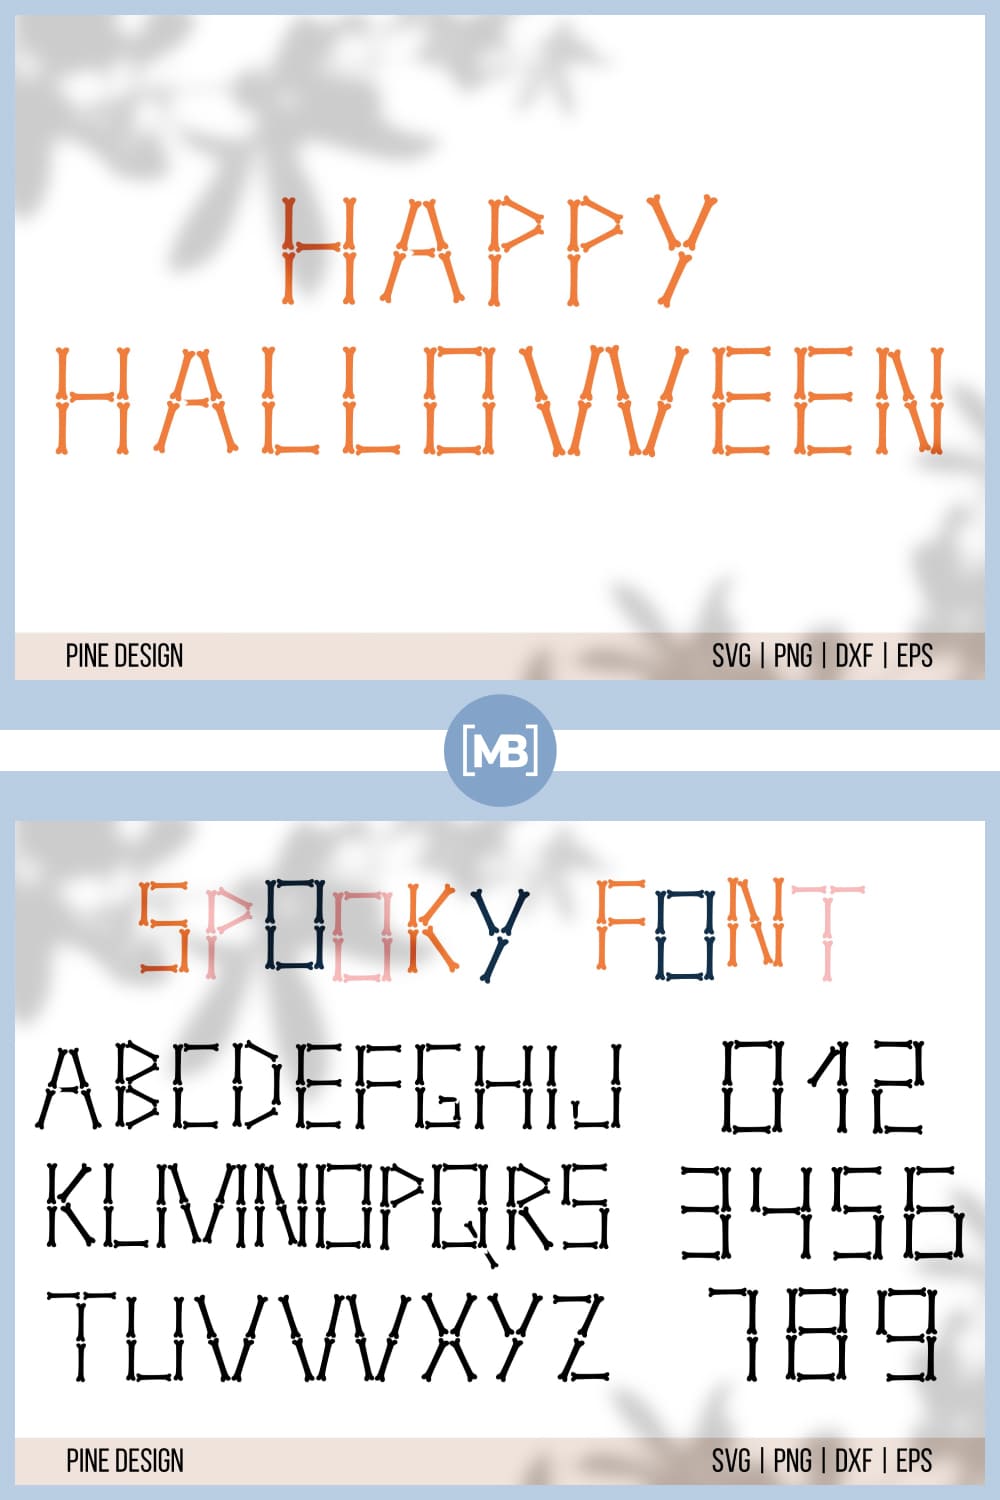 11 Halloween font Halloween bones alphabet